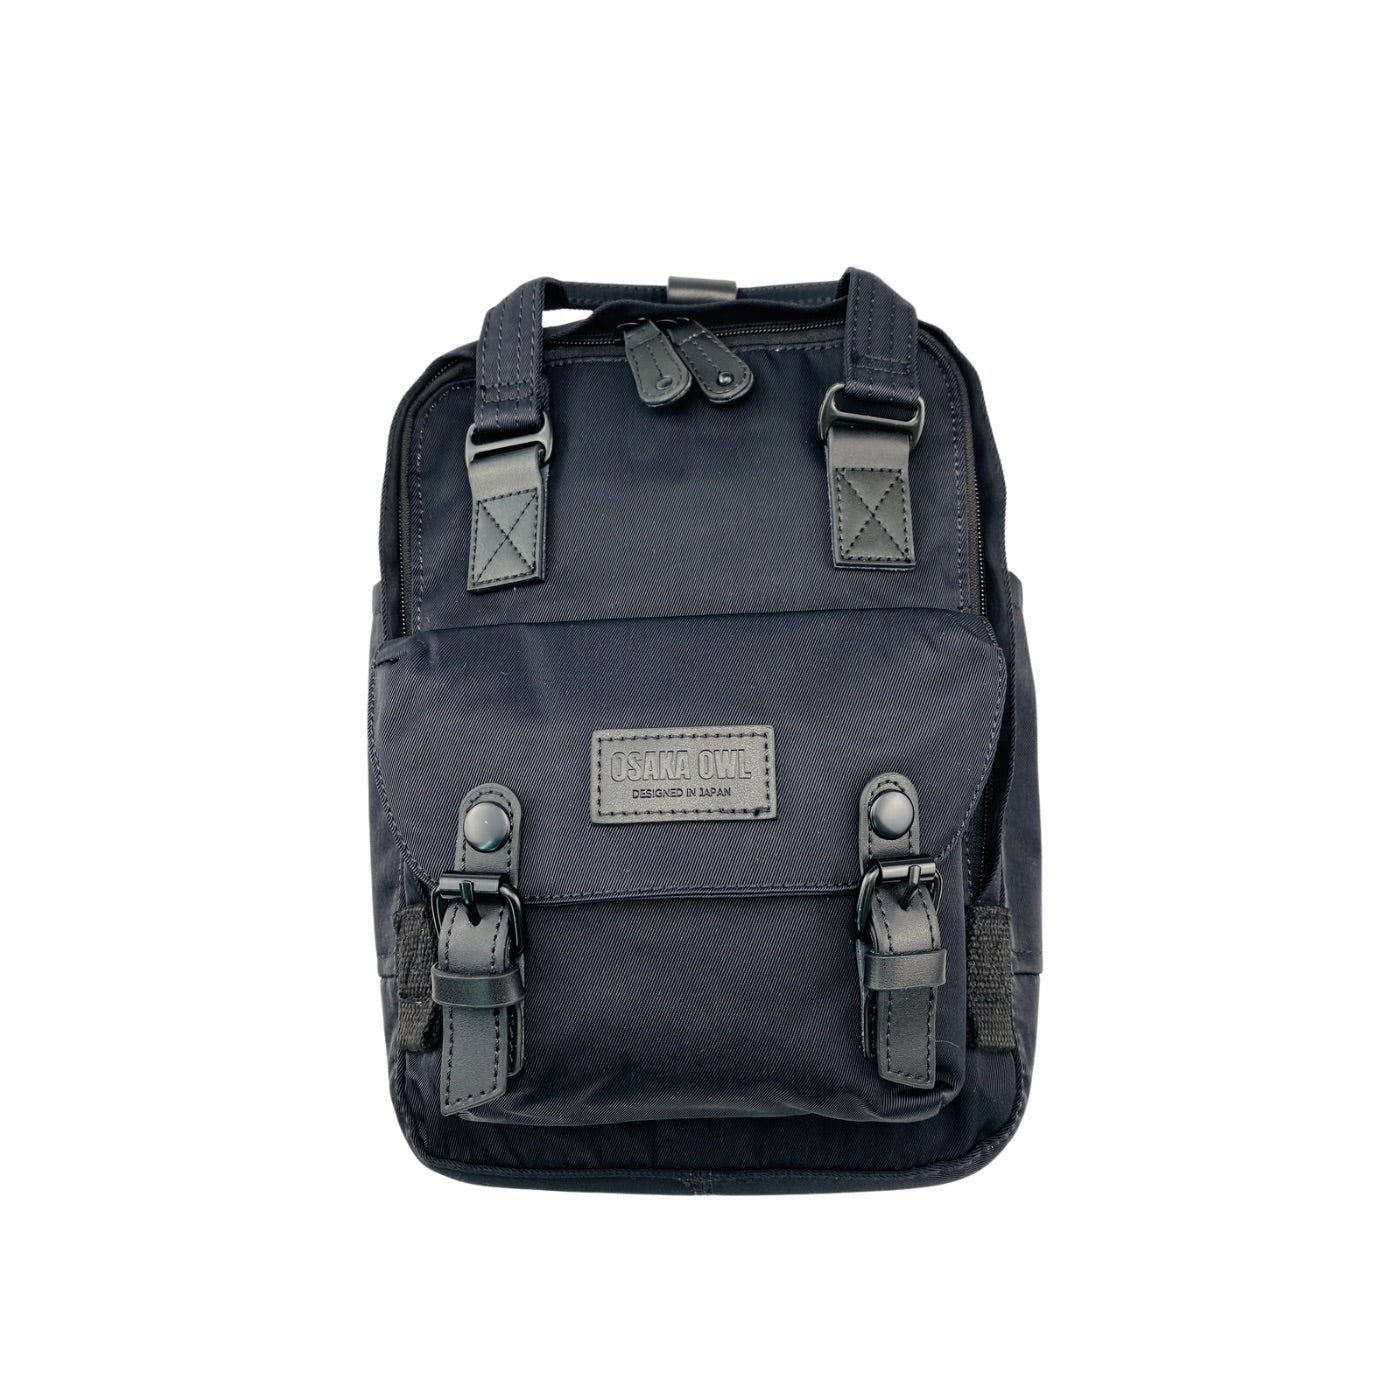 Weekender Backpack-Medium